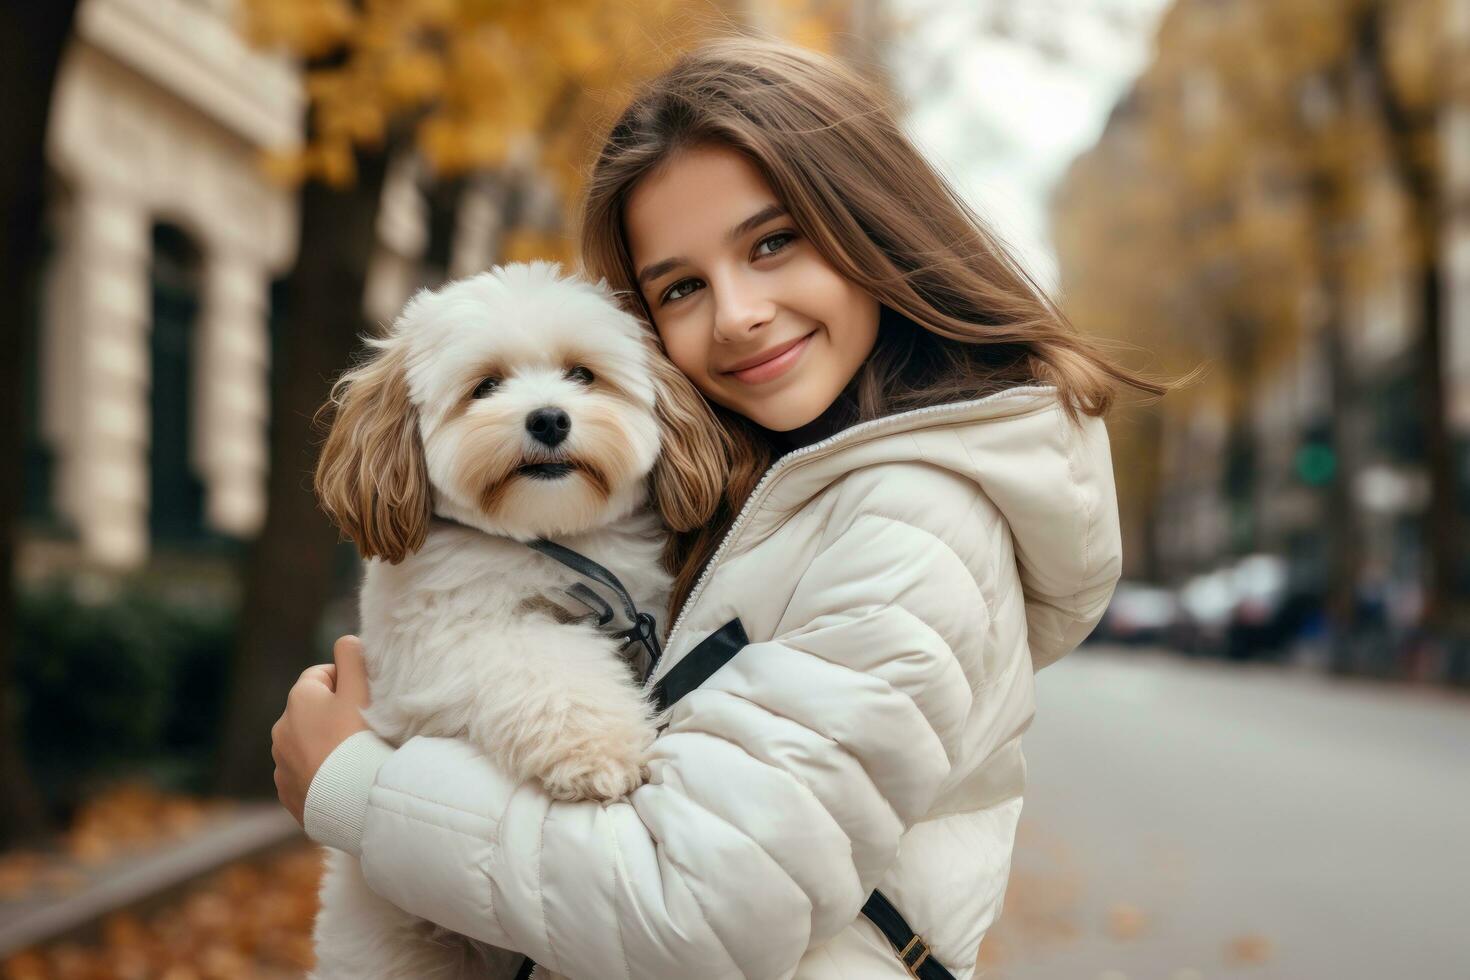 meisje in een wit jasje wandelen naar beneden de straat met een hond in haar armen foto